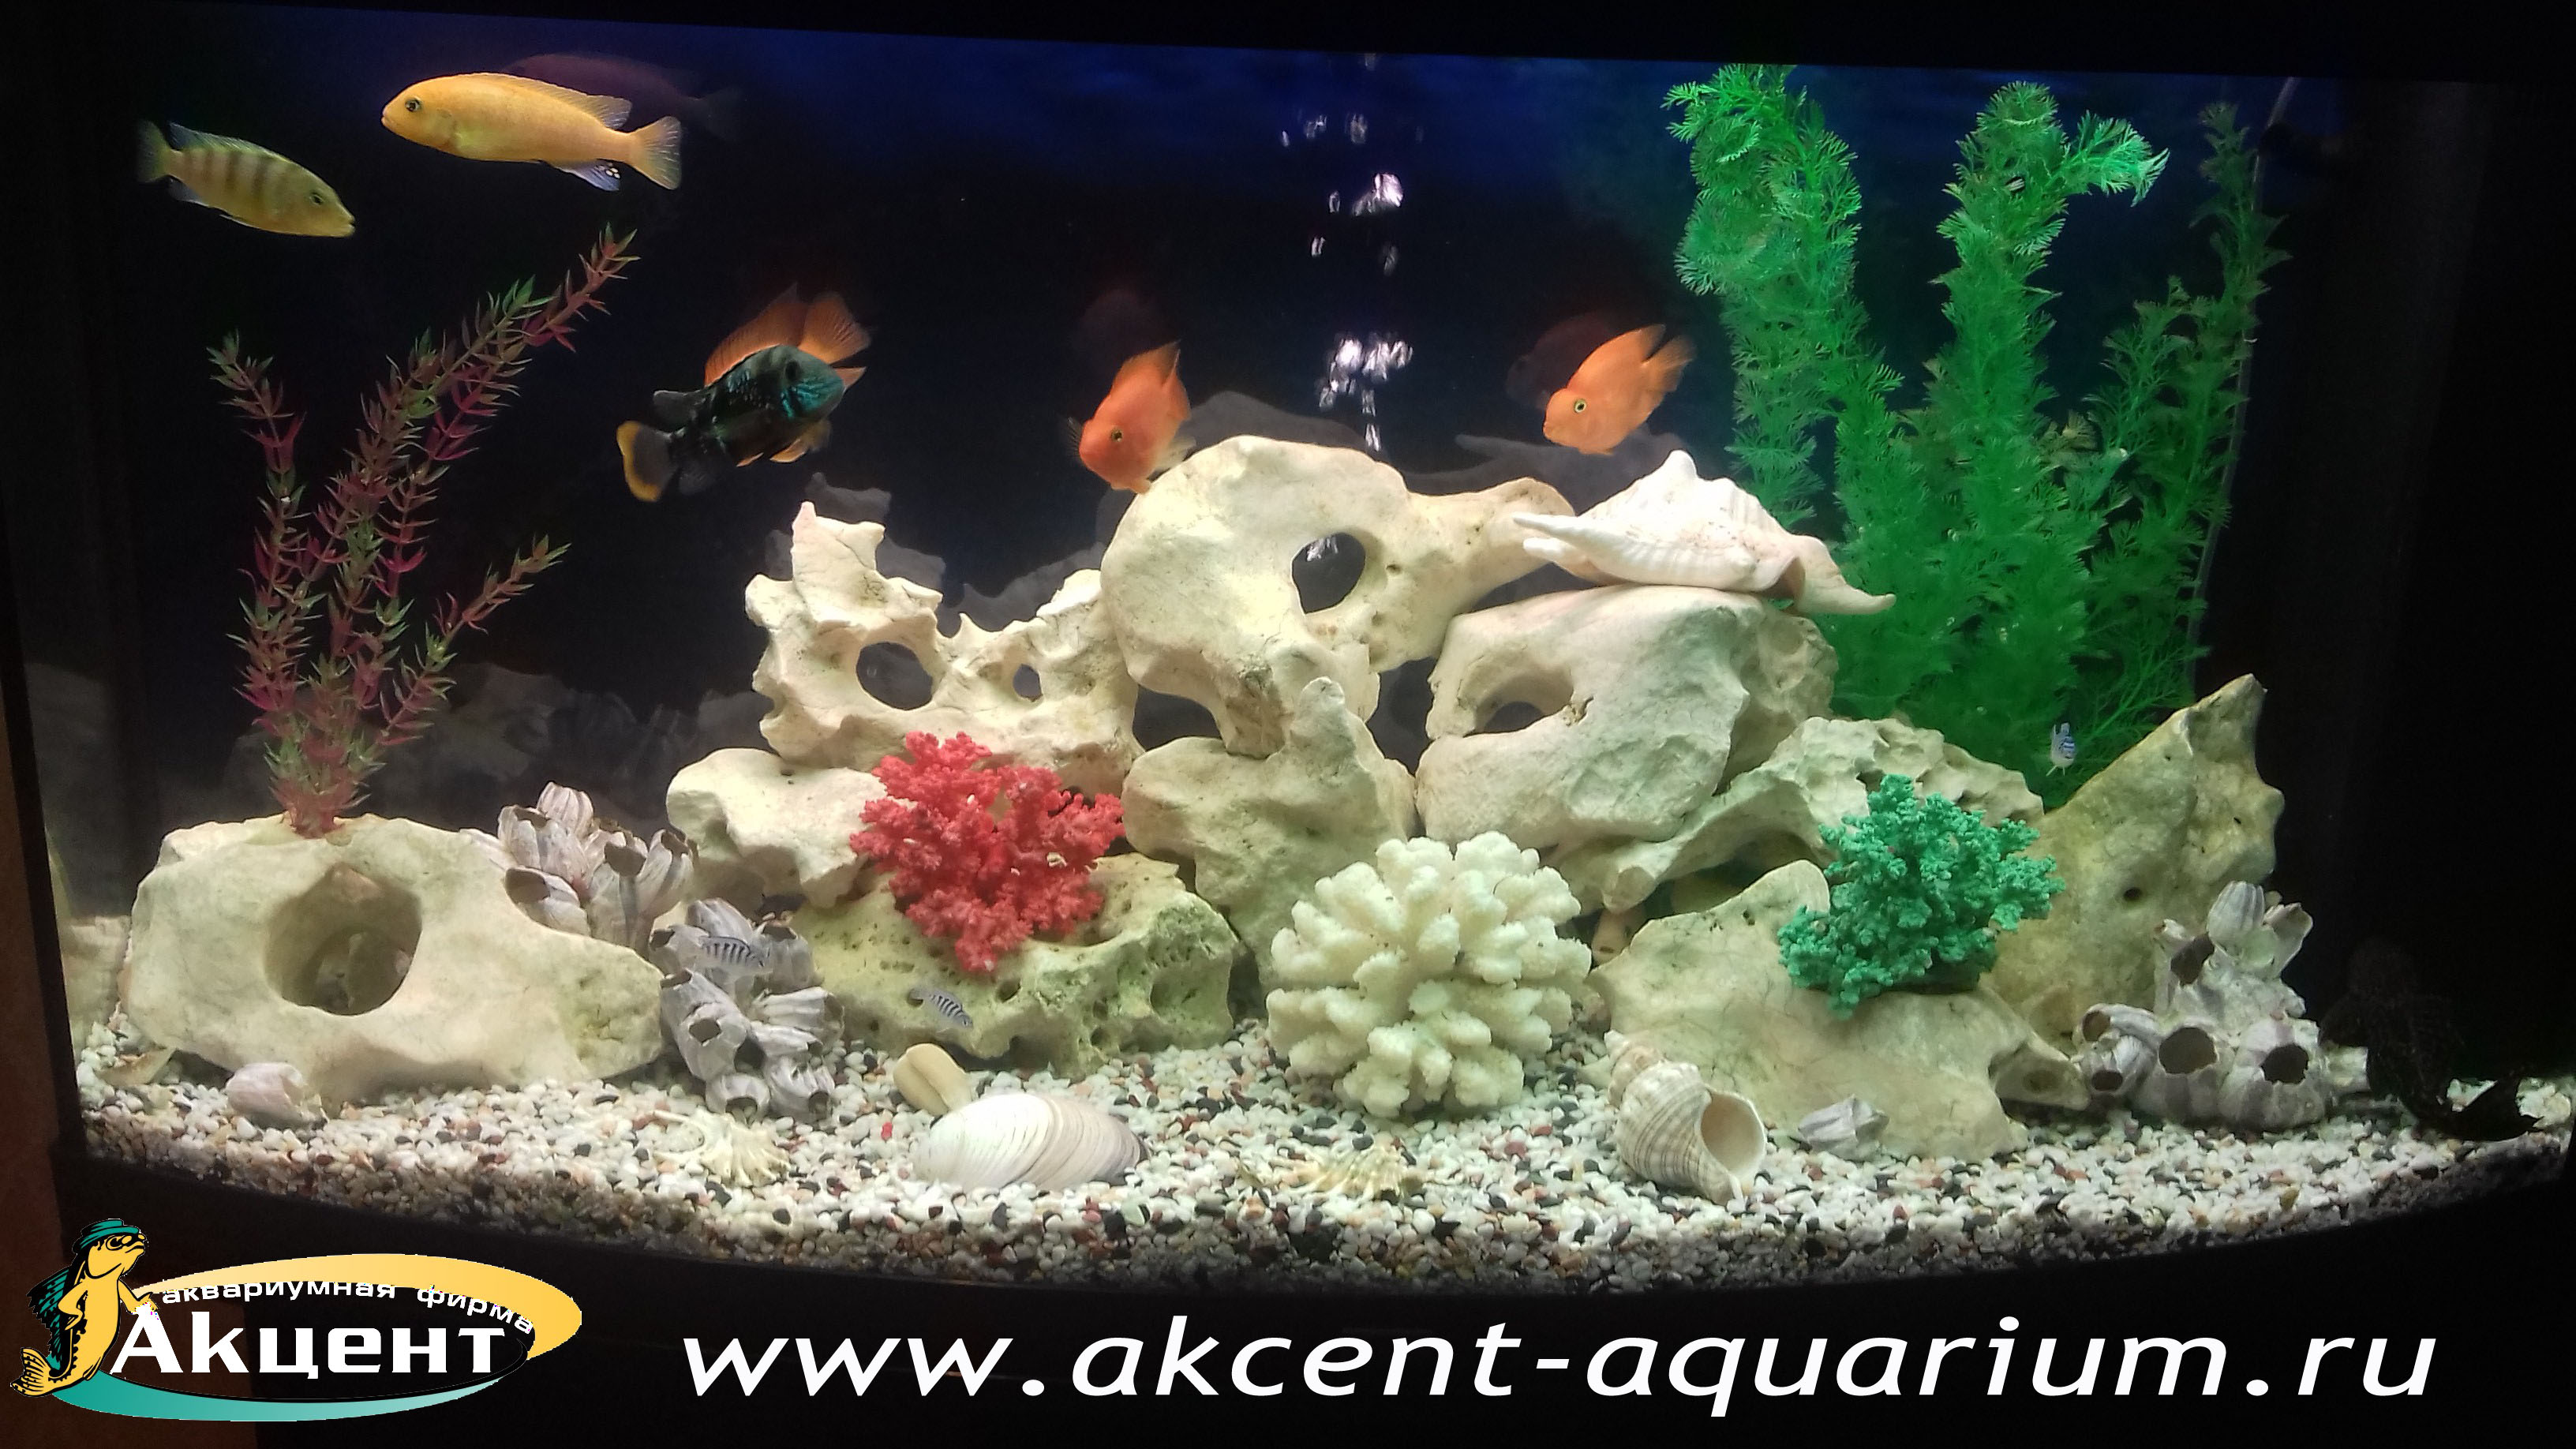 Акцент-аквариум, аквариум 240 литров, псевдоморе, кенийский камень,африканские цихлиды, бирюзовые акары, попугаи